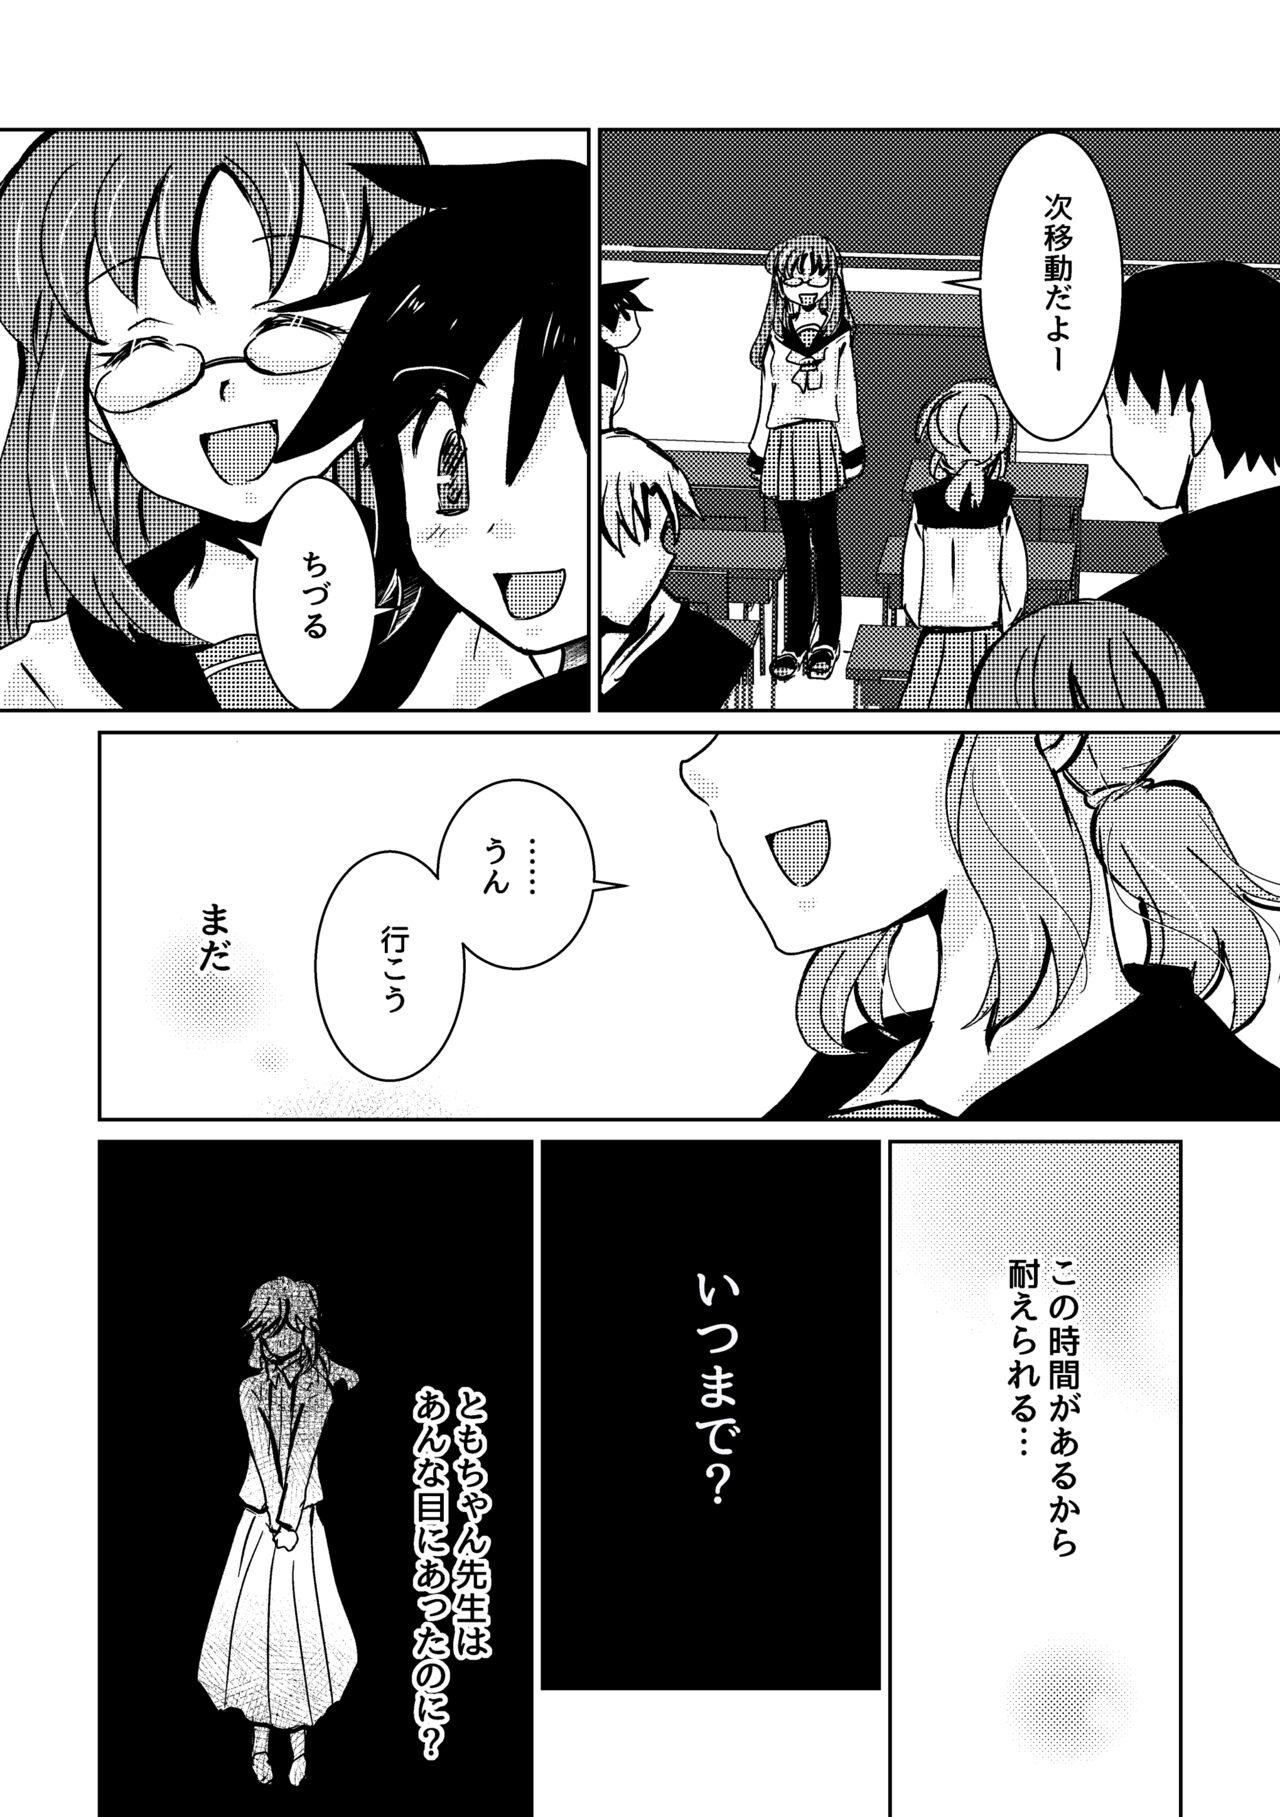 Blackwoman Kareya Yoru no Hanaka Episode 3 Reality - Page 8